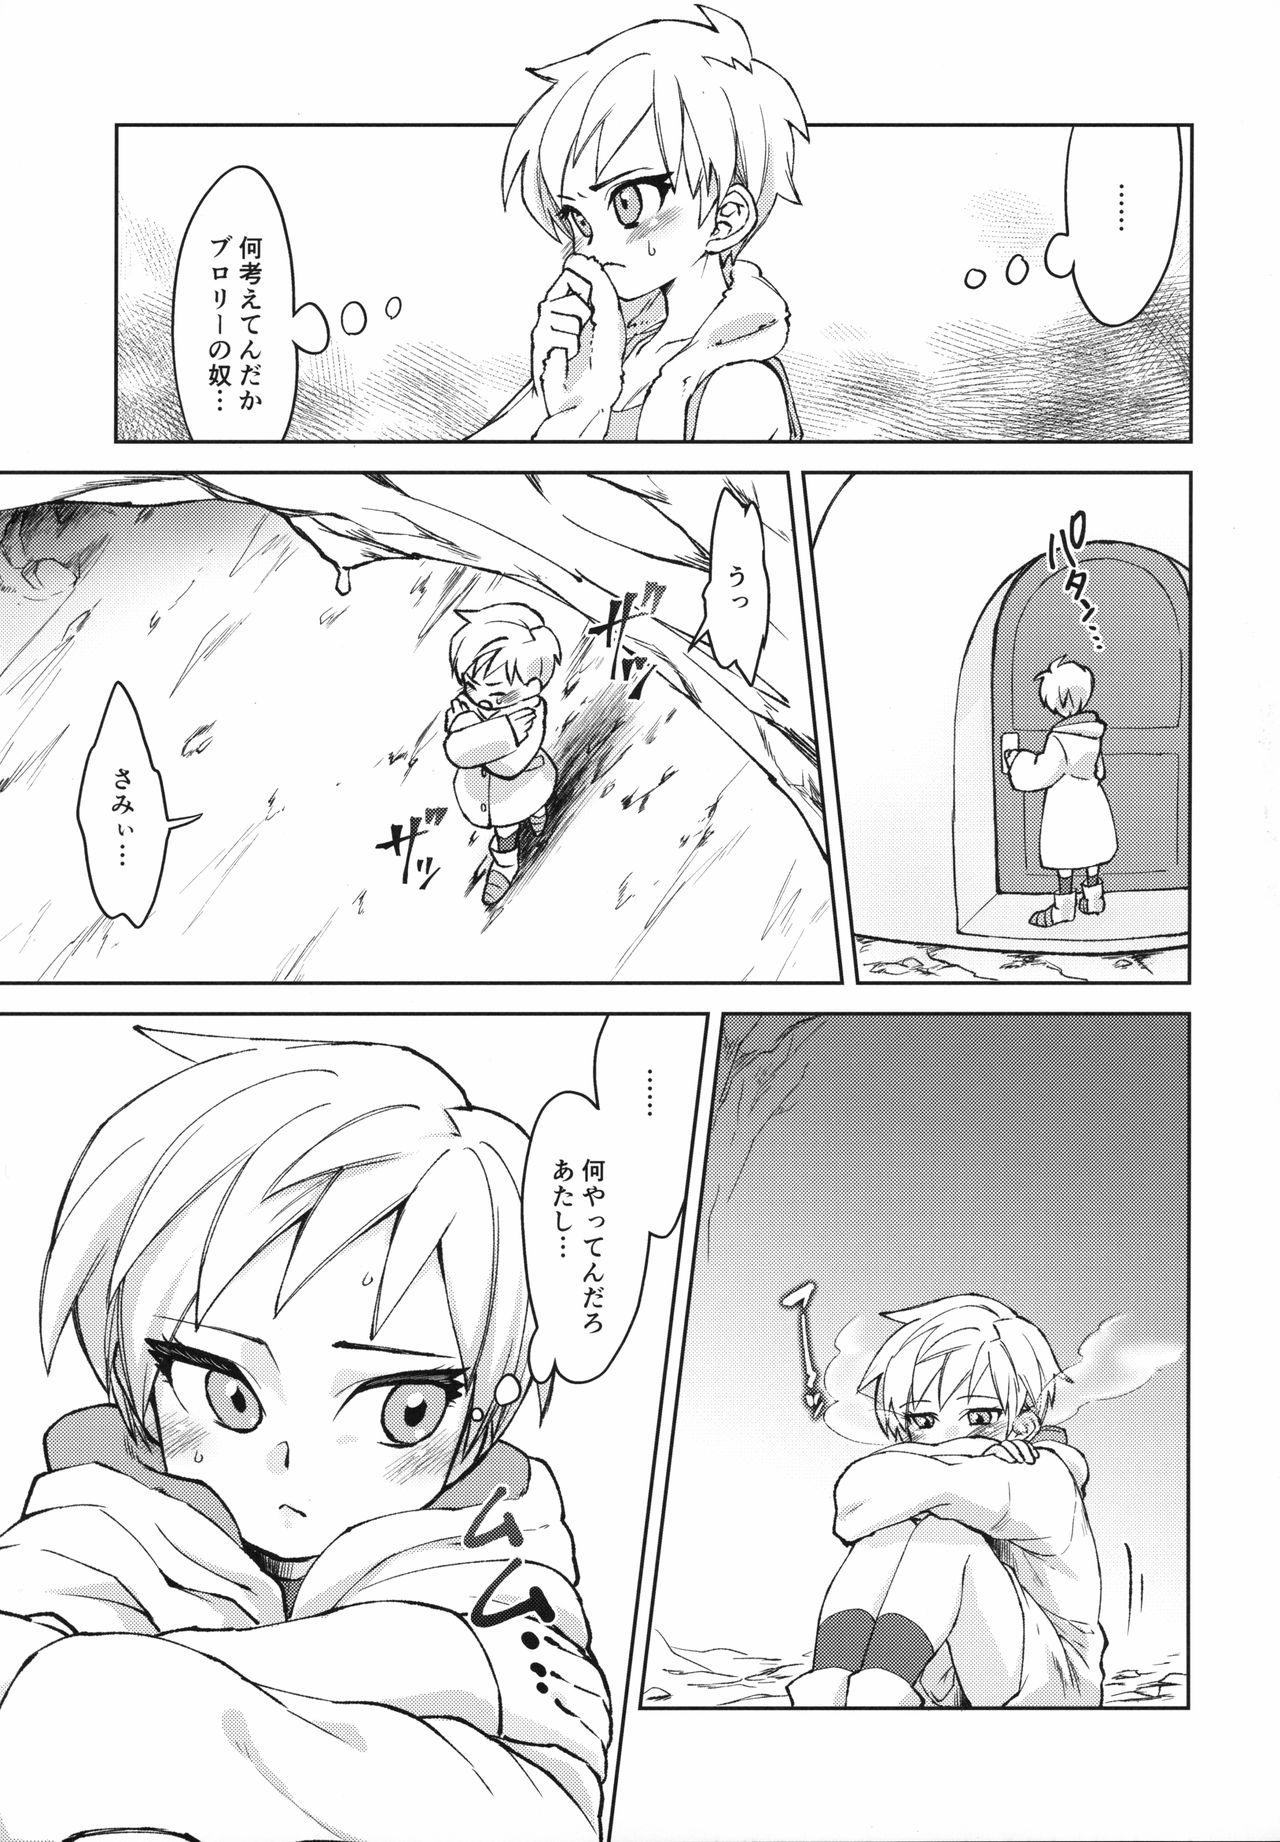 Bucetinha Tsukiyo ni Kawaku - Dragon ball super 19yo - Page 8